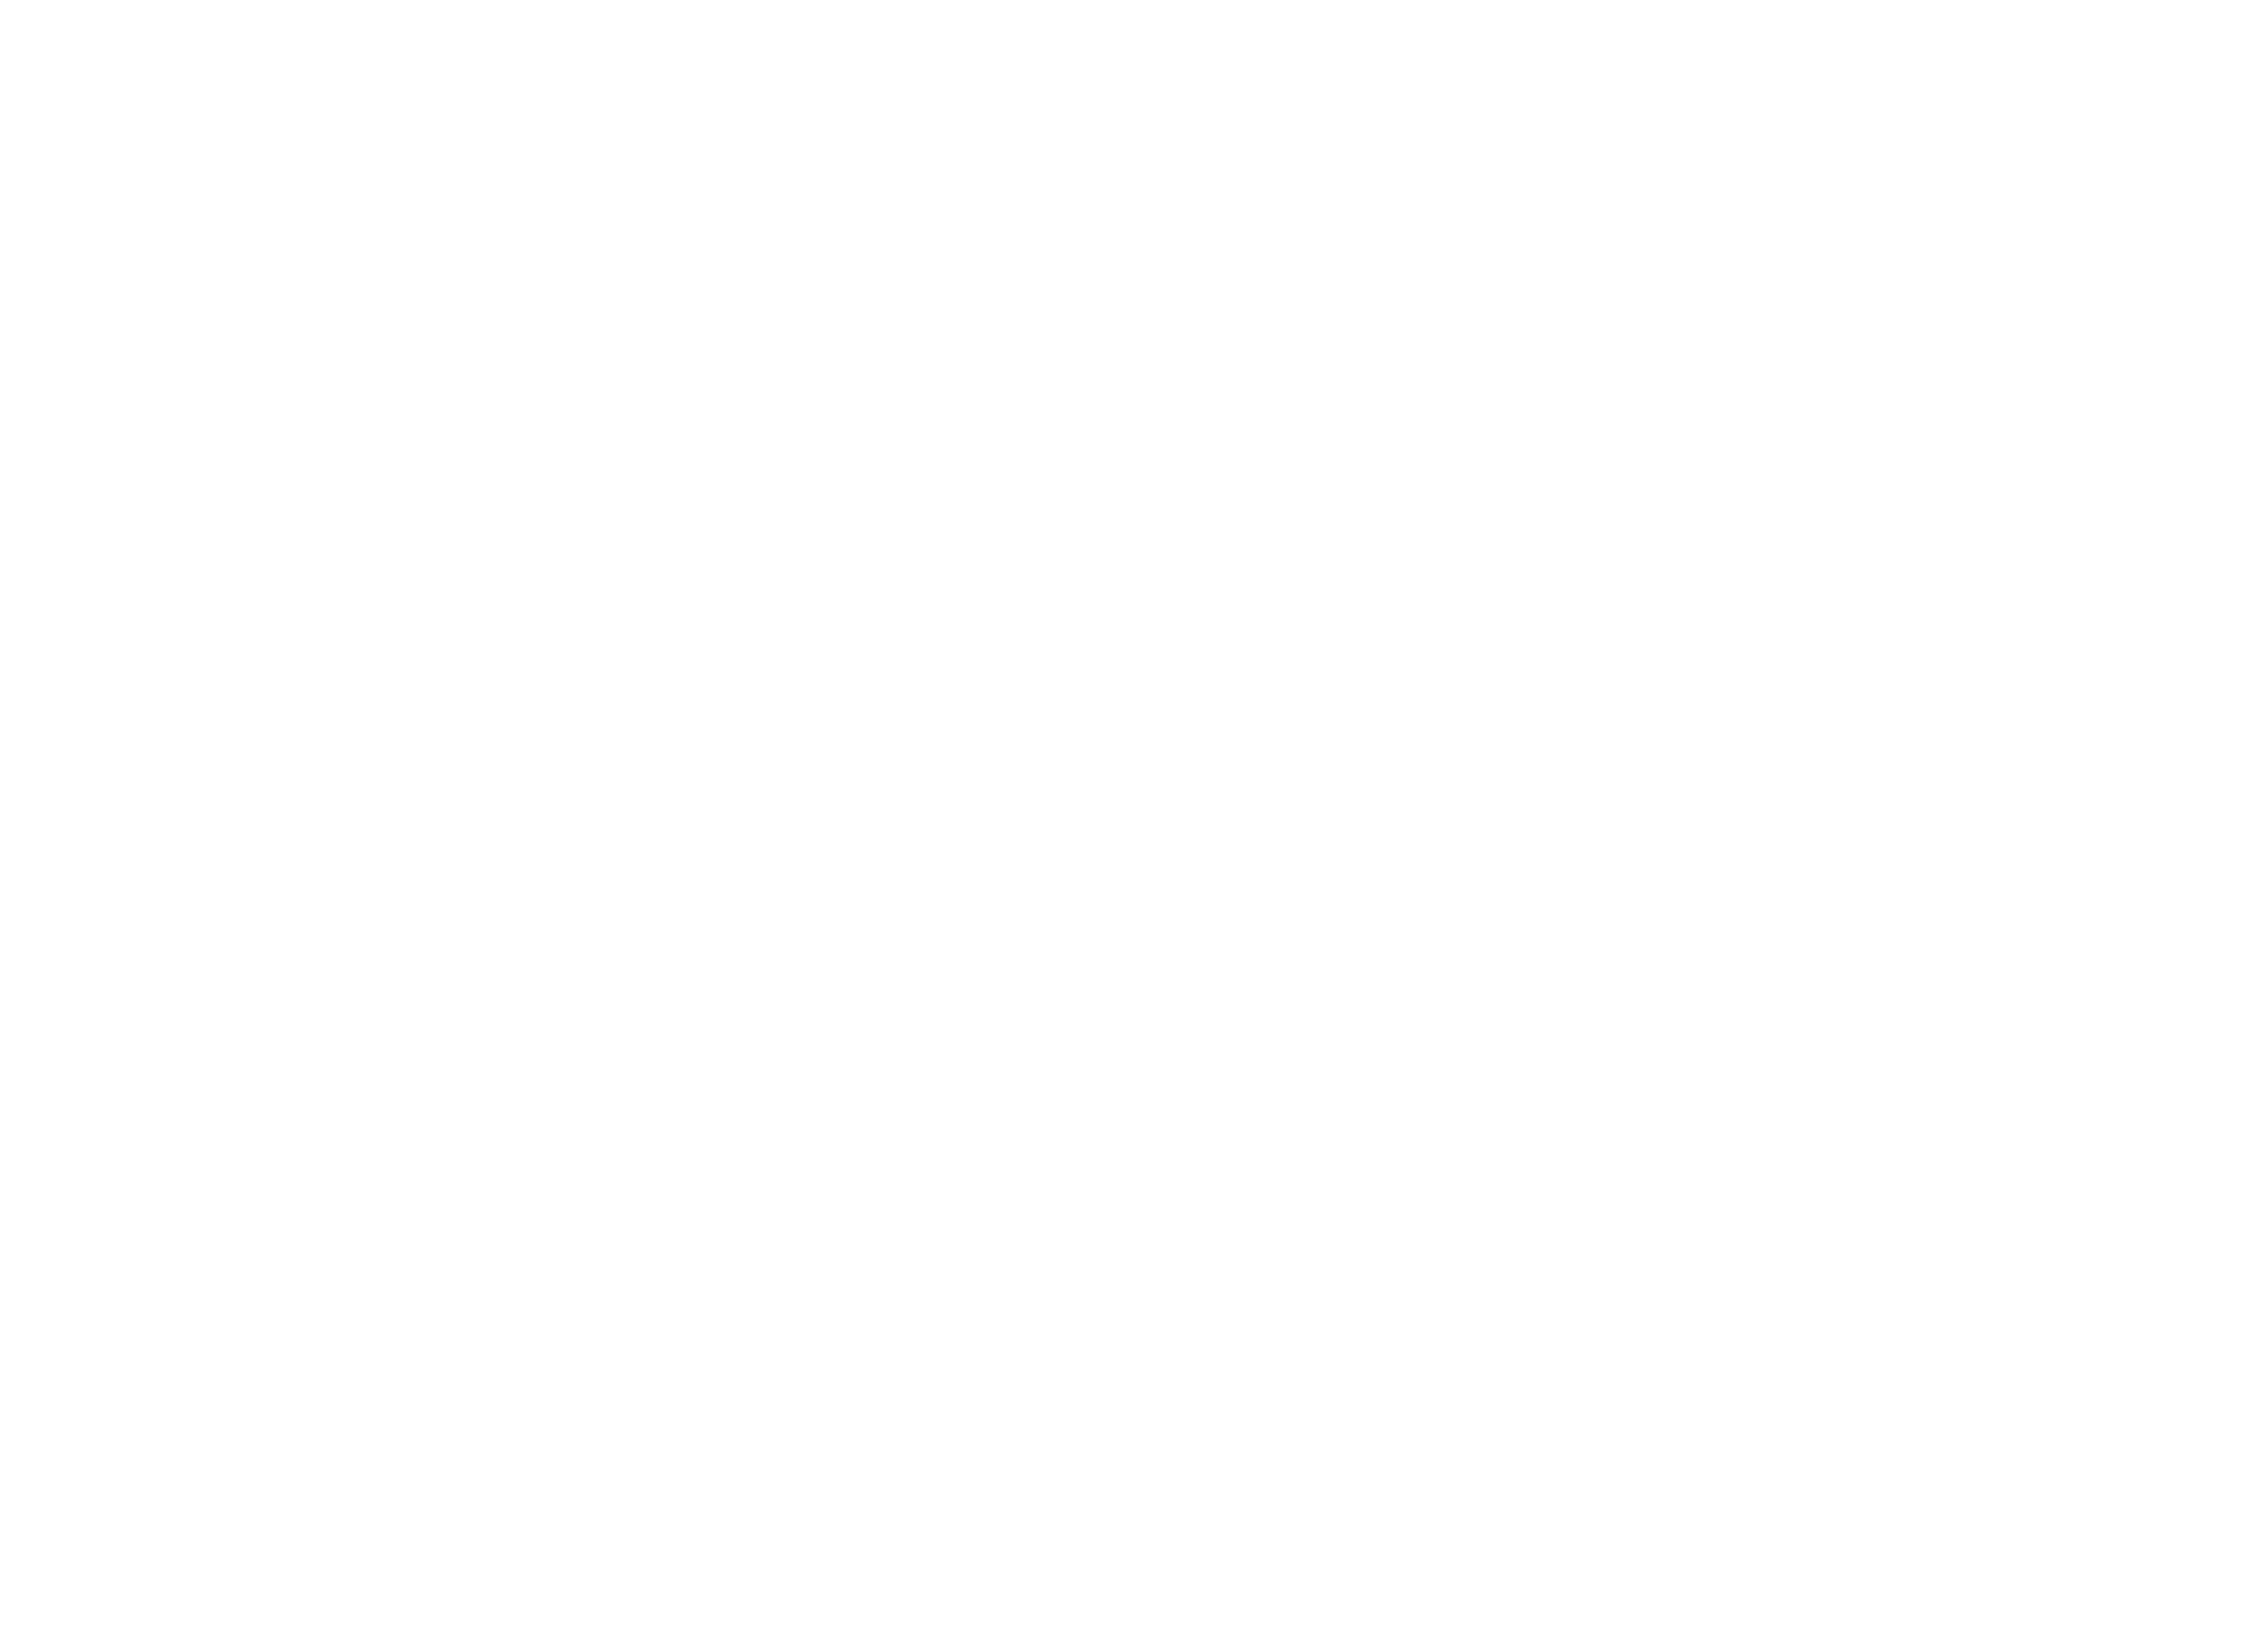 transparent fx logo